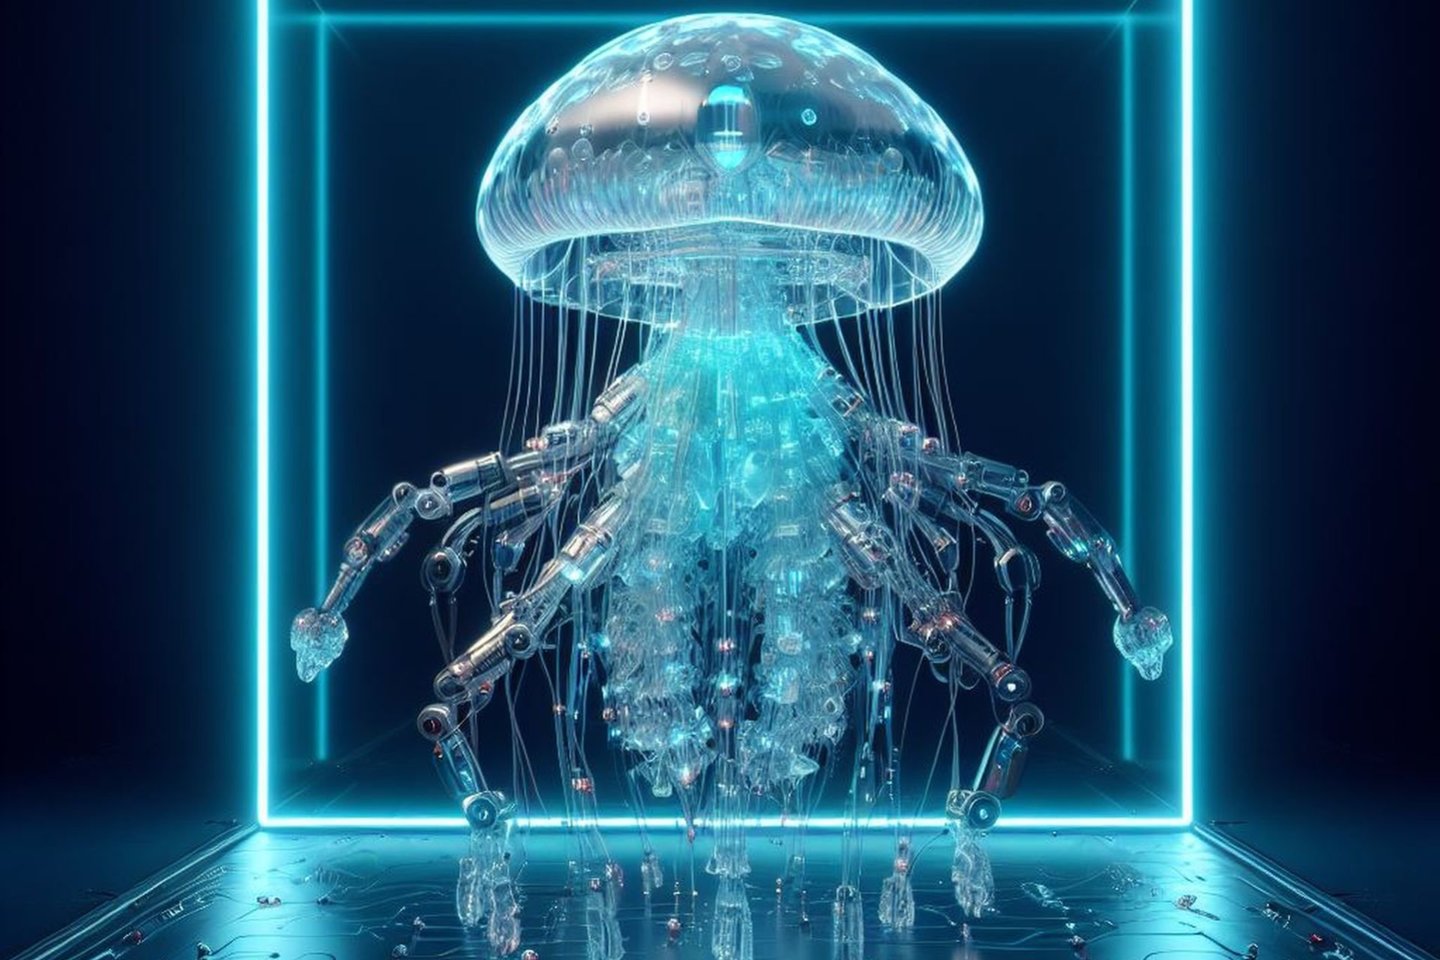  Kiborgė medūza su „plaukimo kepuraite“ ir elektrine varomąja sistema gali plaukti keturis kartus didesniu greičiu nei natūralus jos greitis (asociatyvinė iliustr.)<br> Bing / DALL-E-3 iliustr.